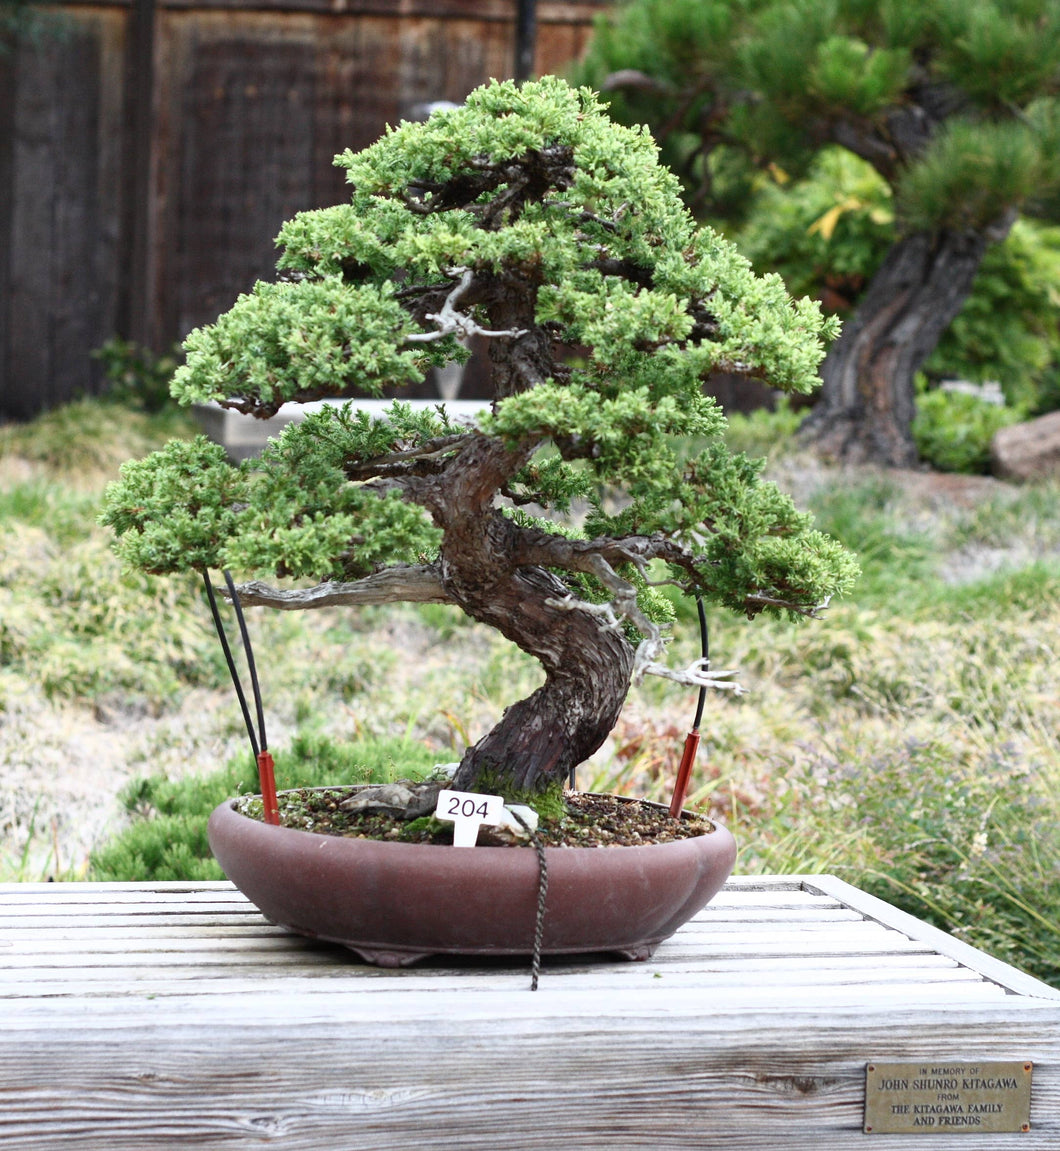 Bonsai Tree | White Design | Seed Grow Kit